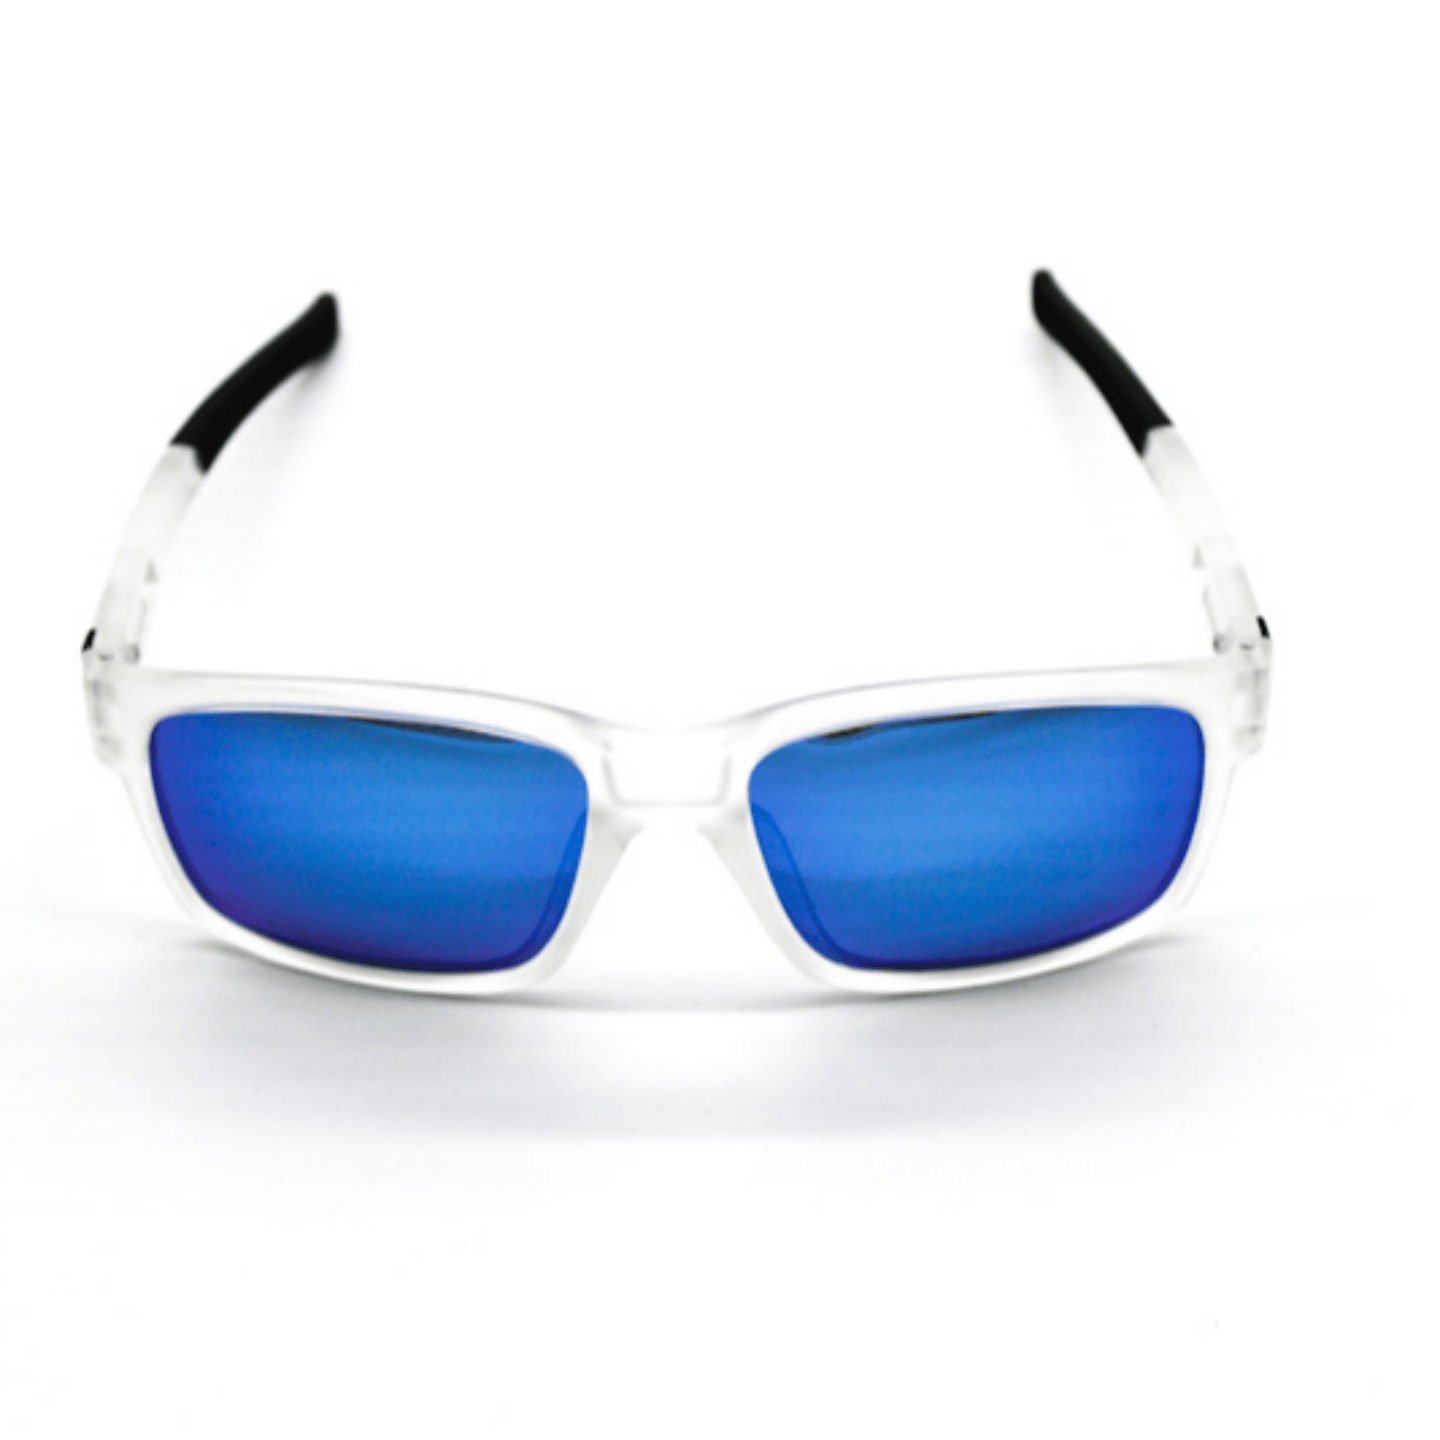 White Blue Sunglasses For Men and Women